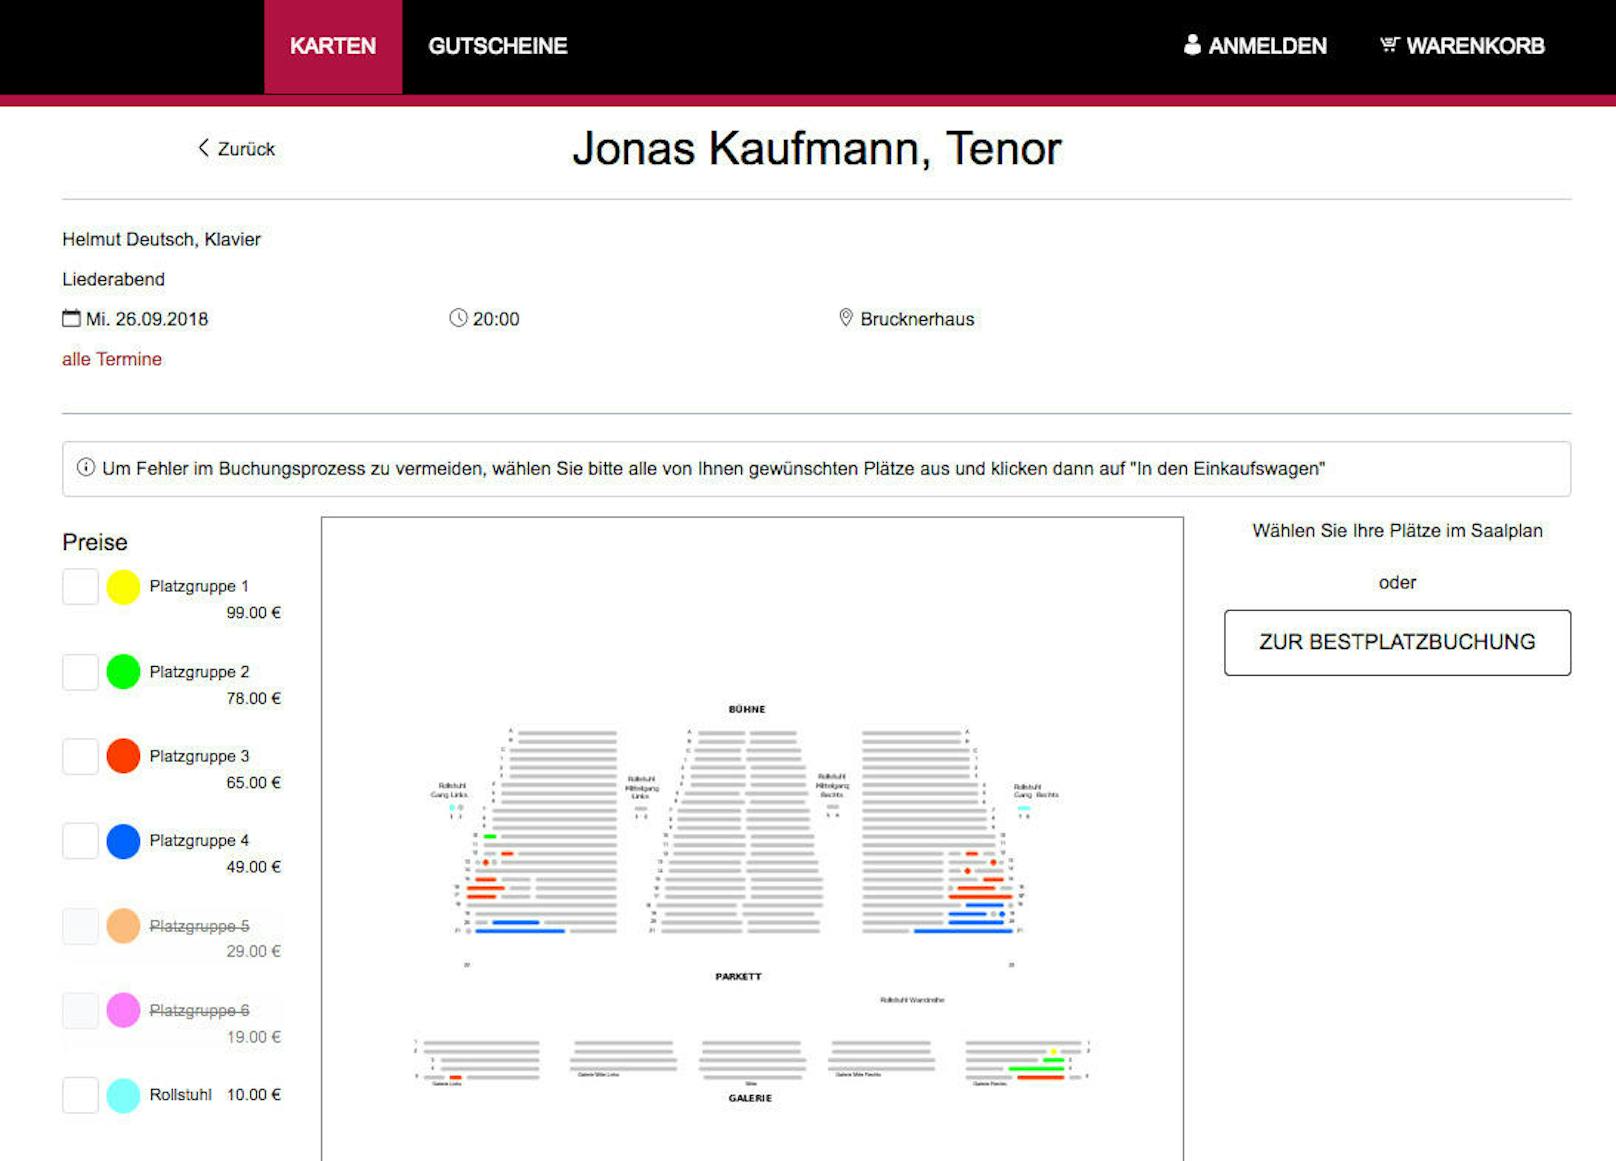 Eines der wenigen Konzerte des Brucknerfestes, das gut verkauft ist: Jonas Kaufmann.